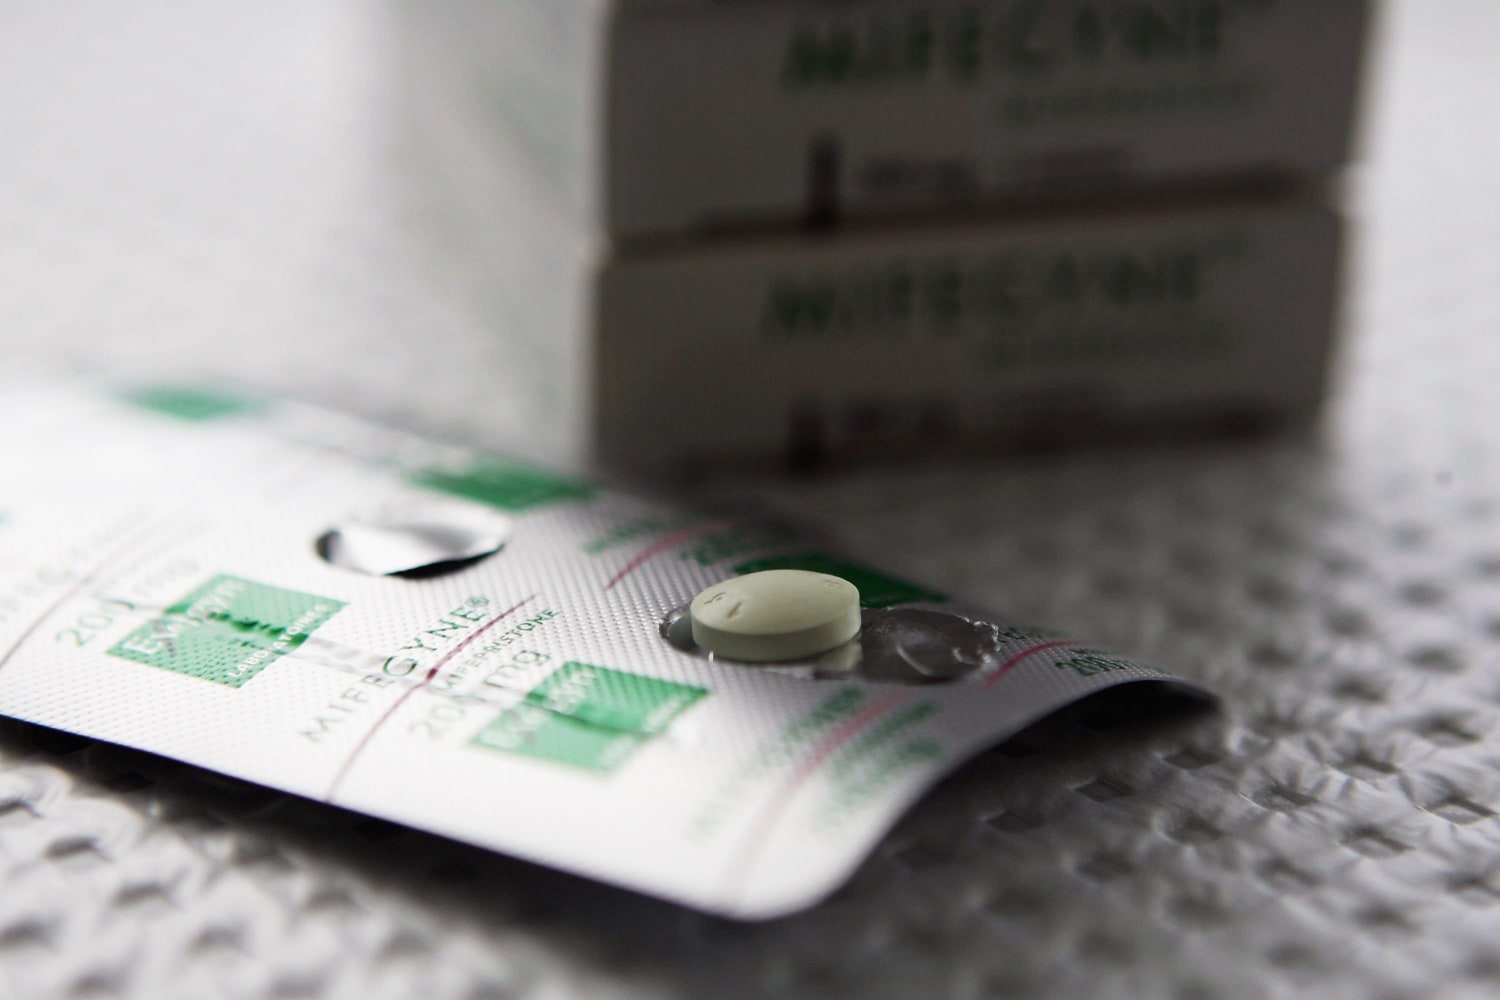 La Corte Suprema de EE. UU. accede a pronunciarse sobre la píldora abortiva  mifepristona